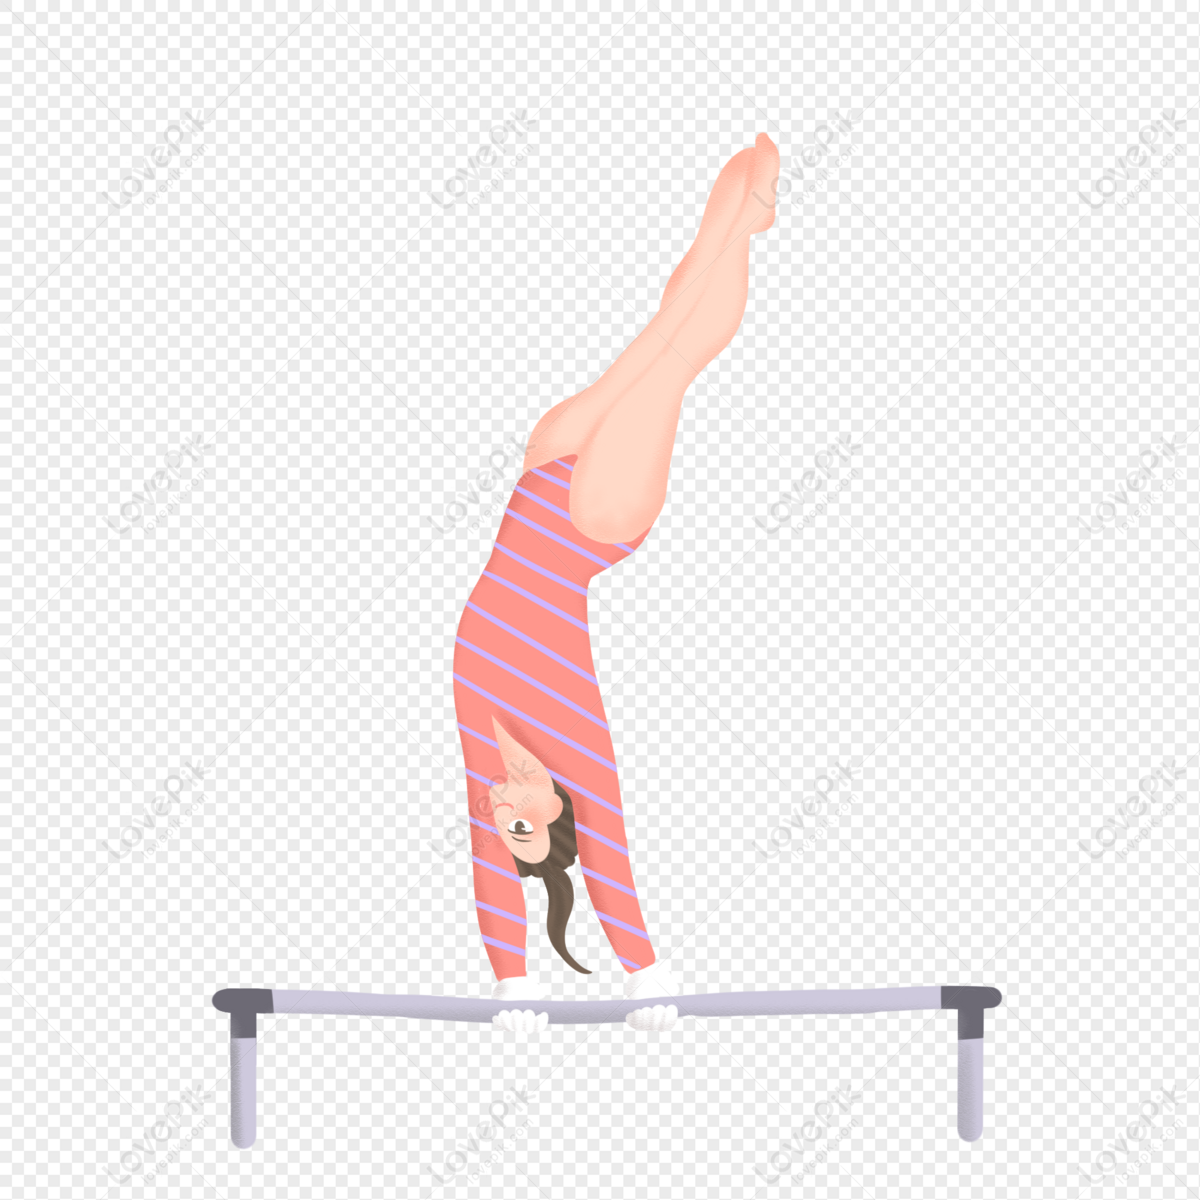 Icono de barras paralelas de gimnasia. Isométrica de gimnasia